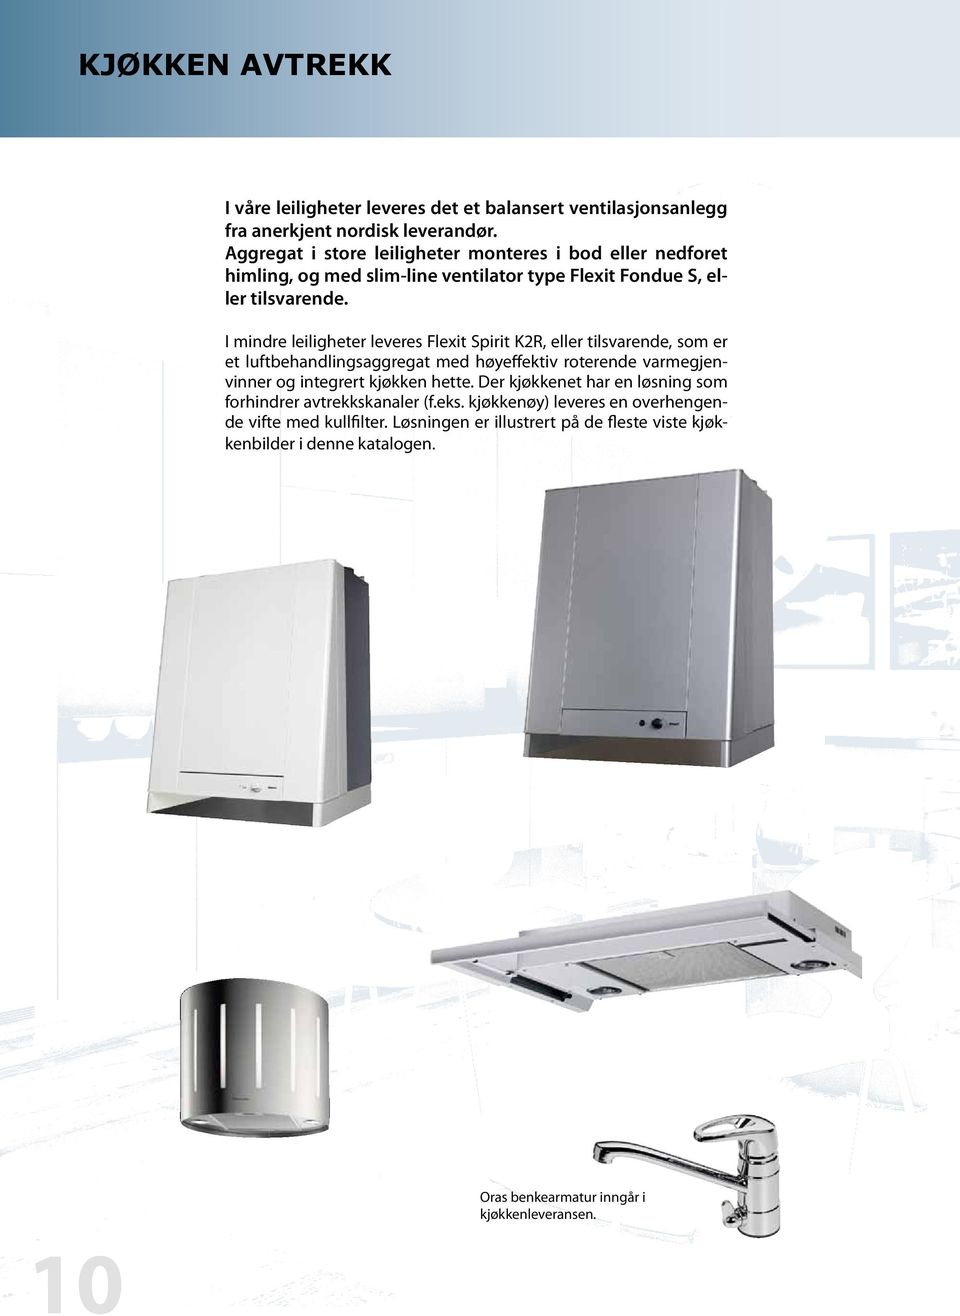 I mindre leiligheter leveres Flexit Spirit K2R, eller tilsvarende, som er et luftbehandlingsaggregat med høyeffektiv roterende varmegjenvinner og integrert kjøkken